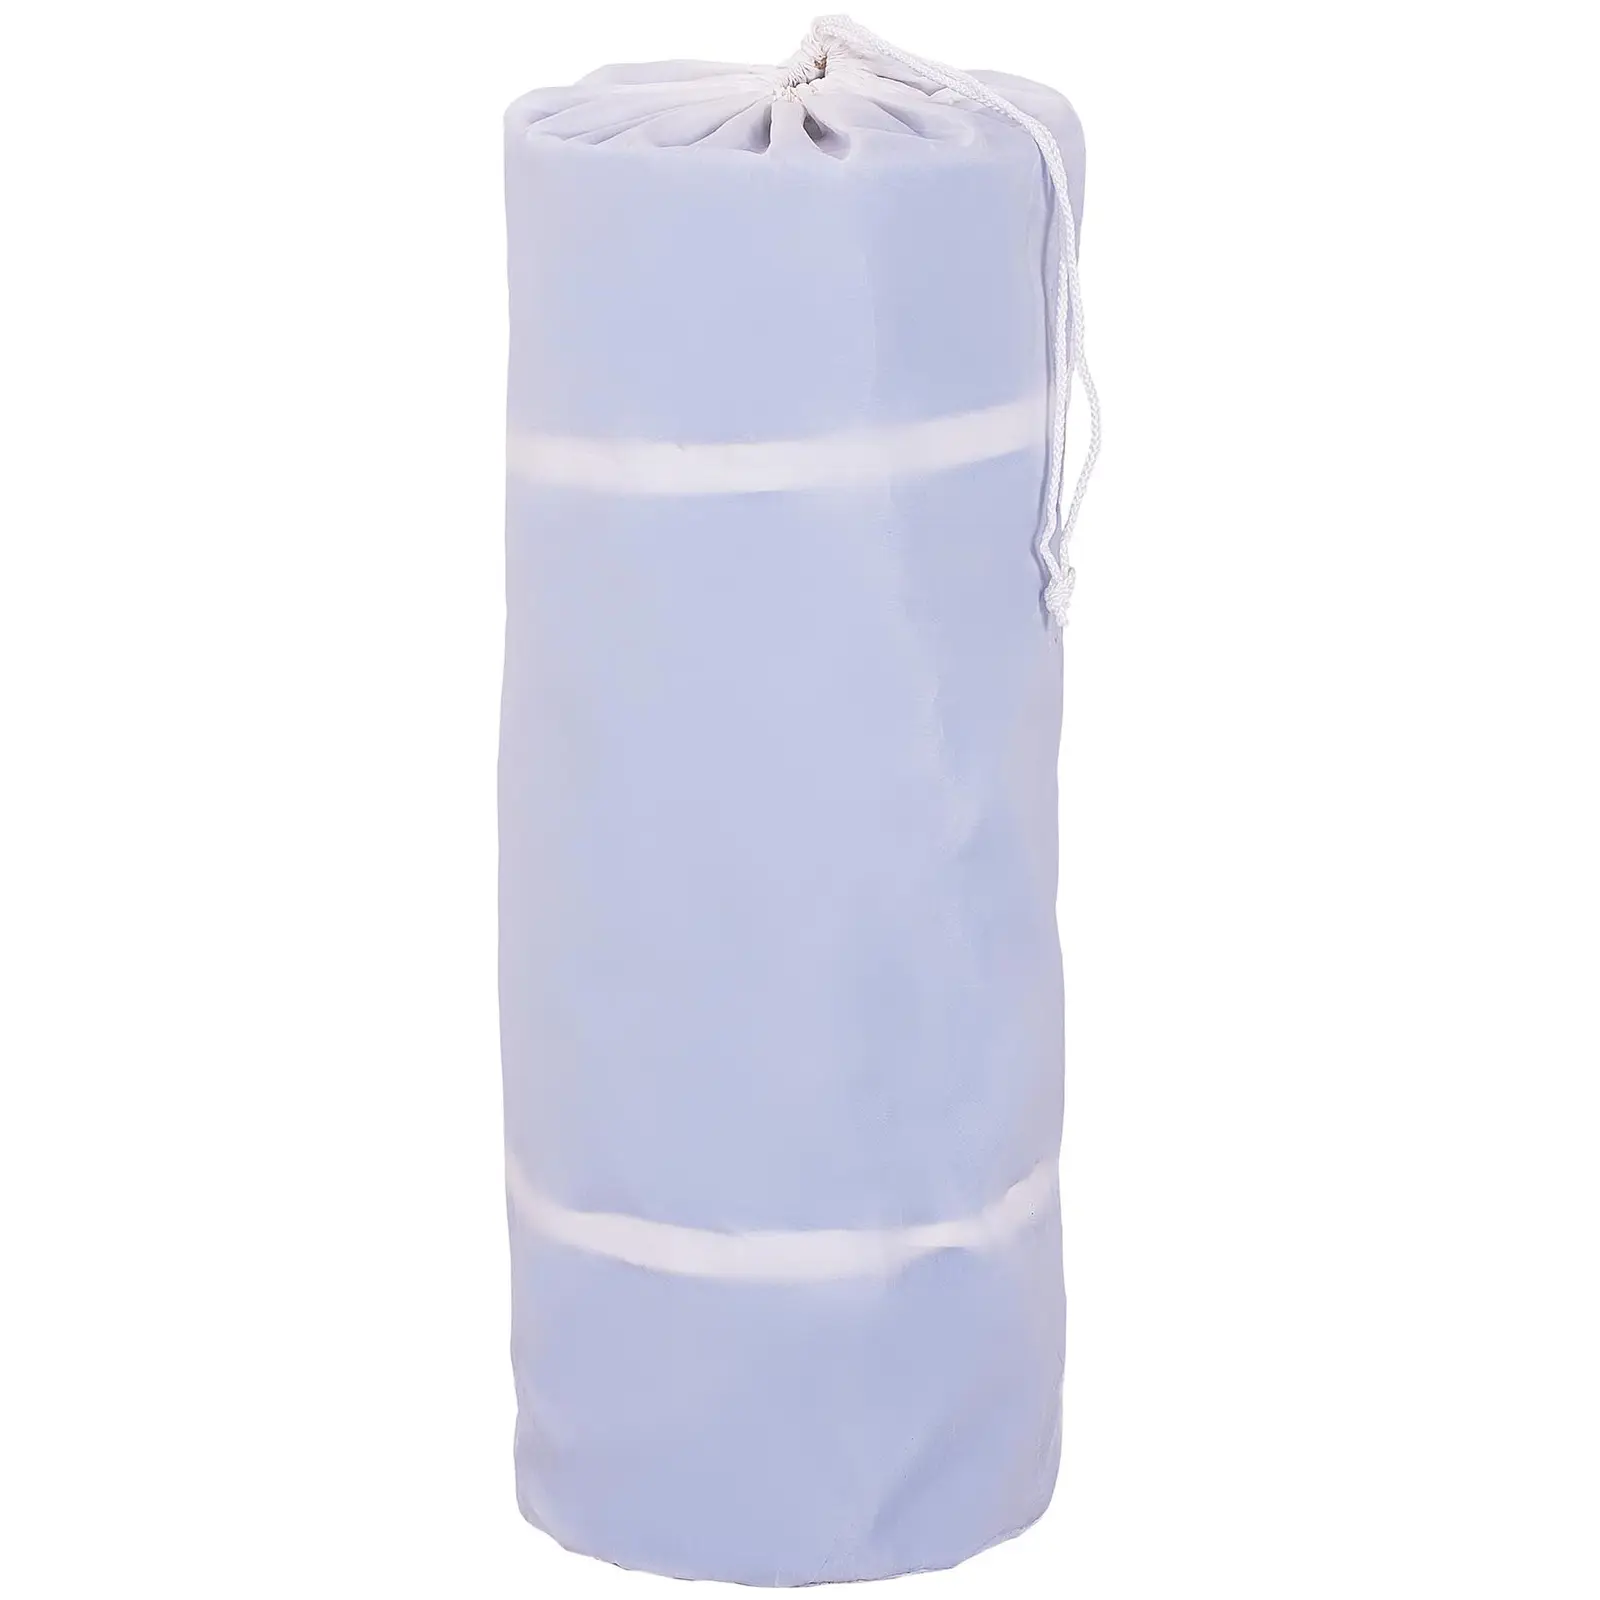 Felfújható tornaszőnyeg - 300 x 100 x 20 cm - 150 kg - kék/fehér